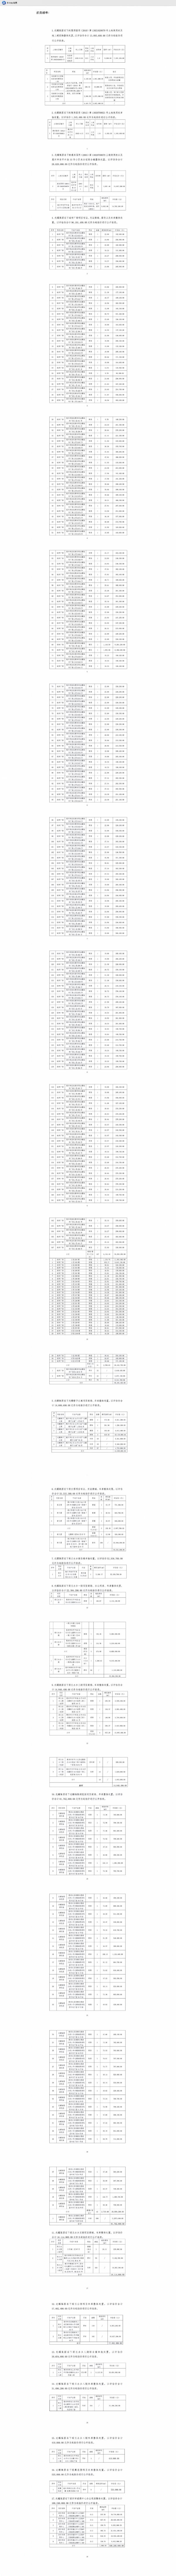 惠州中级会计师报名时间2021_2021会计初级考试时间报名时间广发惠州